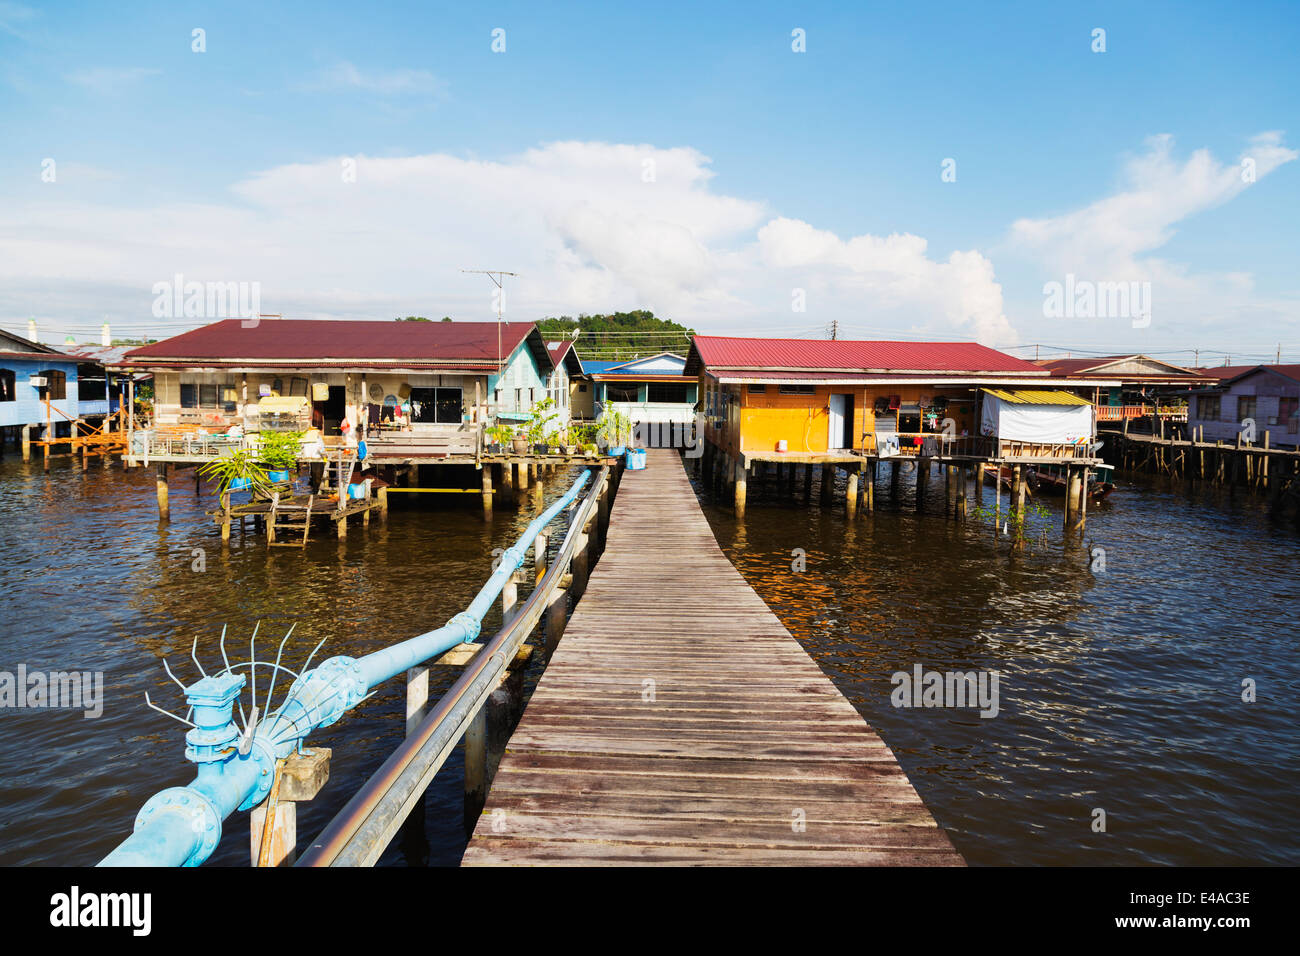 Il Sud Est Asiatico, Regno del Brunei Bandar Seri Begawan, Kampung Ayer acqua village Foto Stock